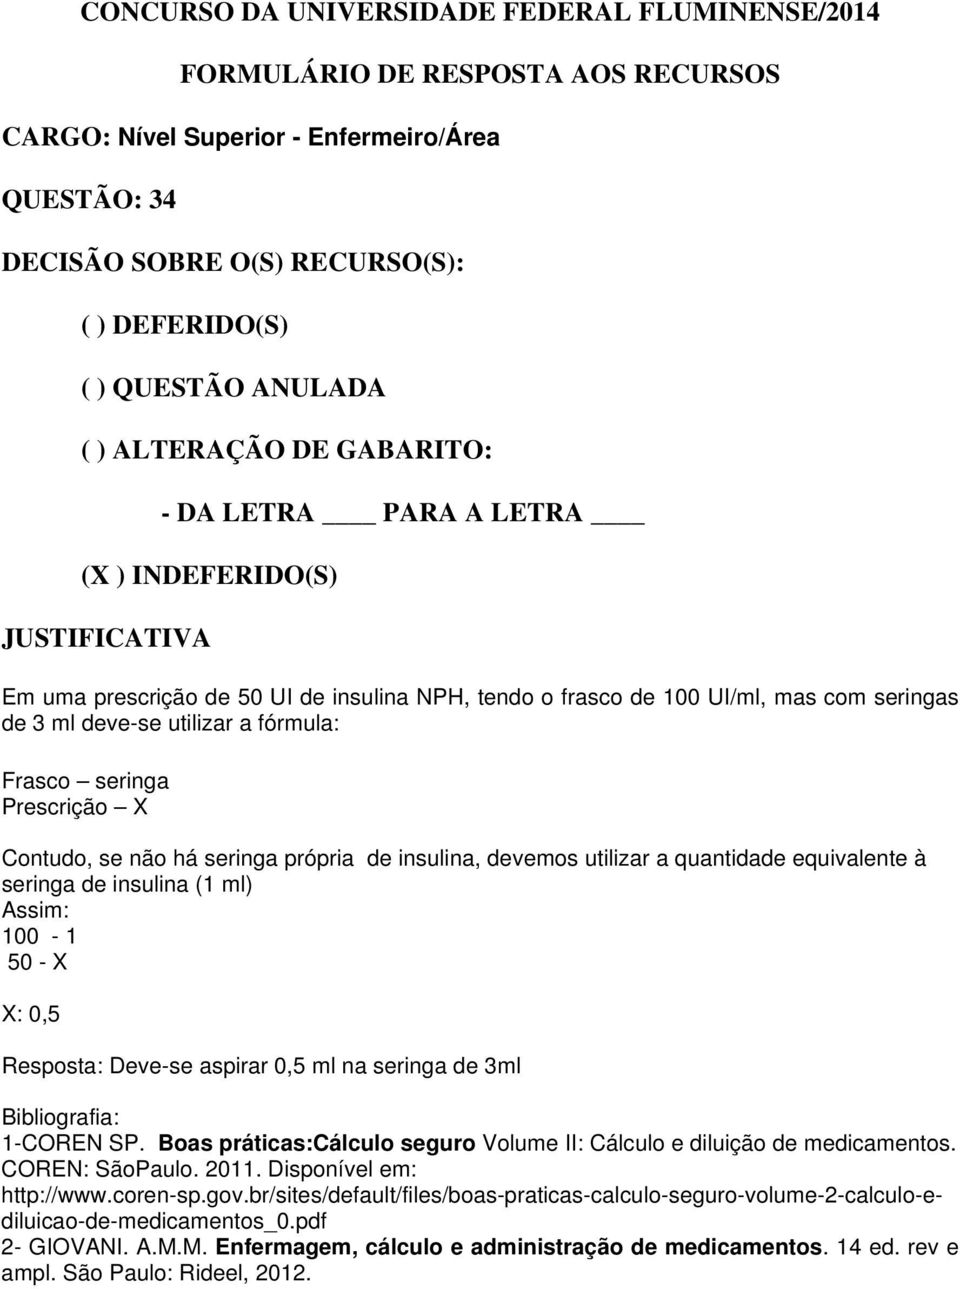 1-COREN SP. Boas práticas:cálculo seguro Volume II: Cálculo e diluição de medicamentos. COREN: SãoPaulo. 2011. Disponível em: http://www.coren-sp.gov.